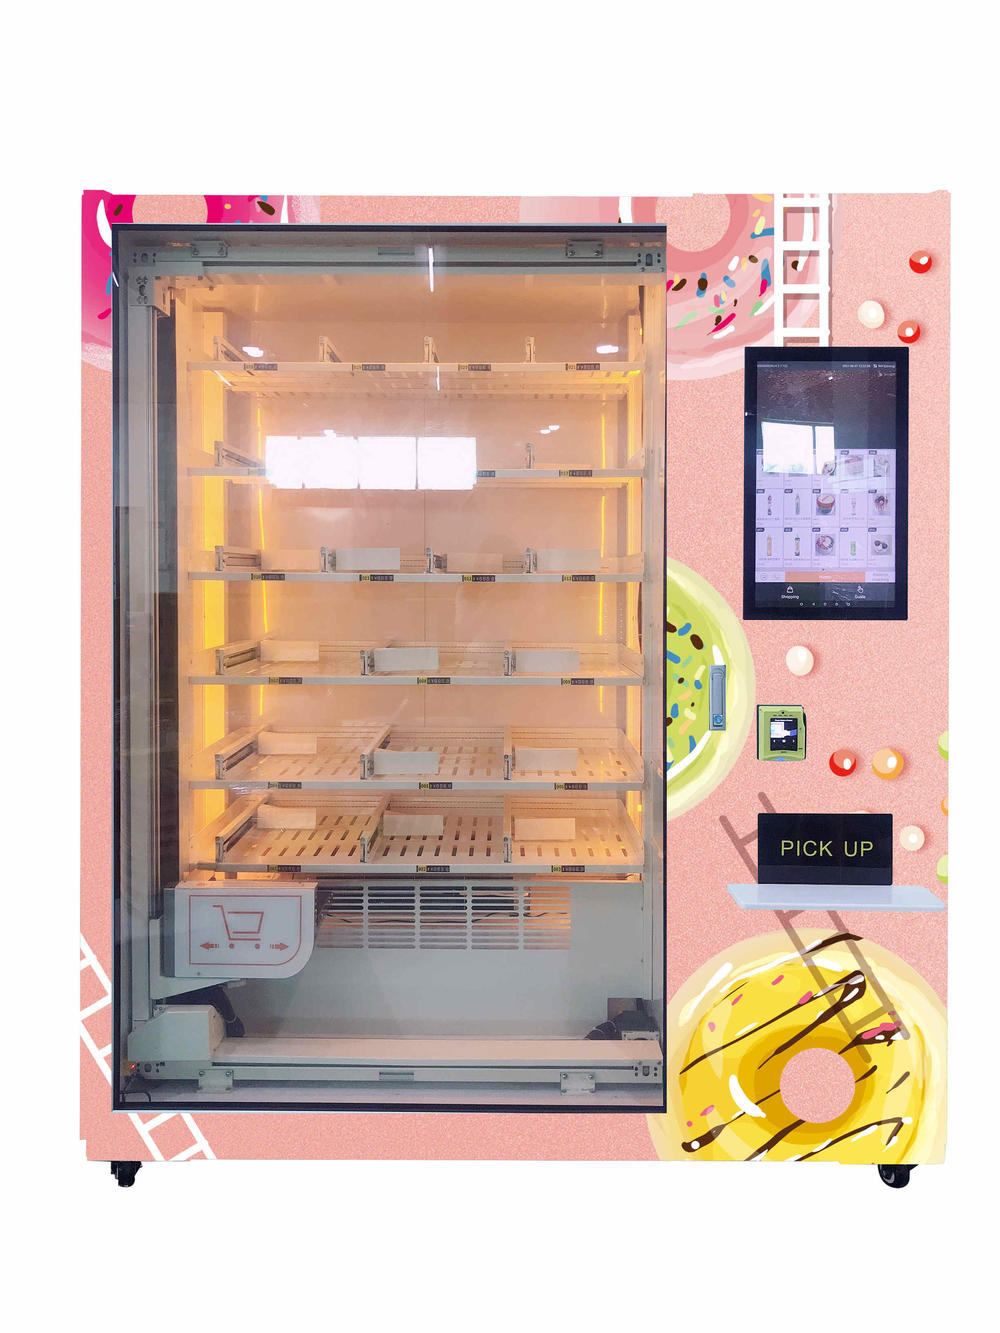 Frozen food vending machine